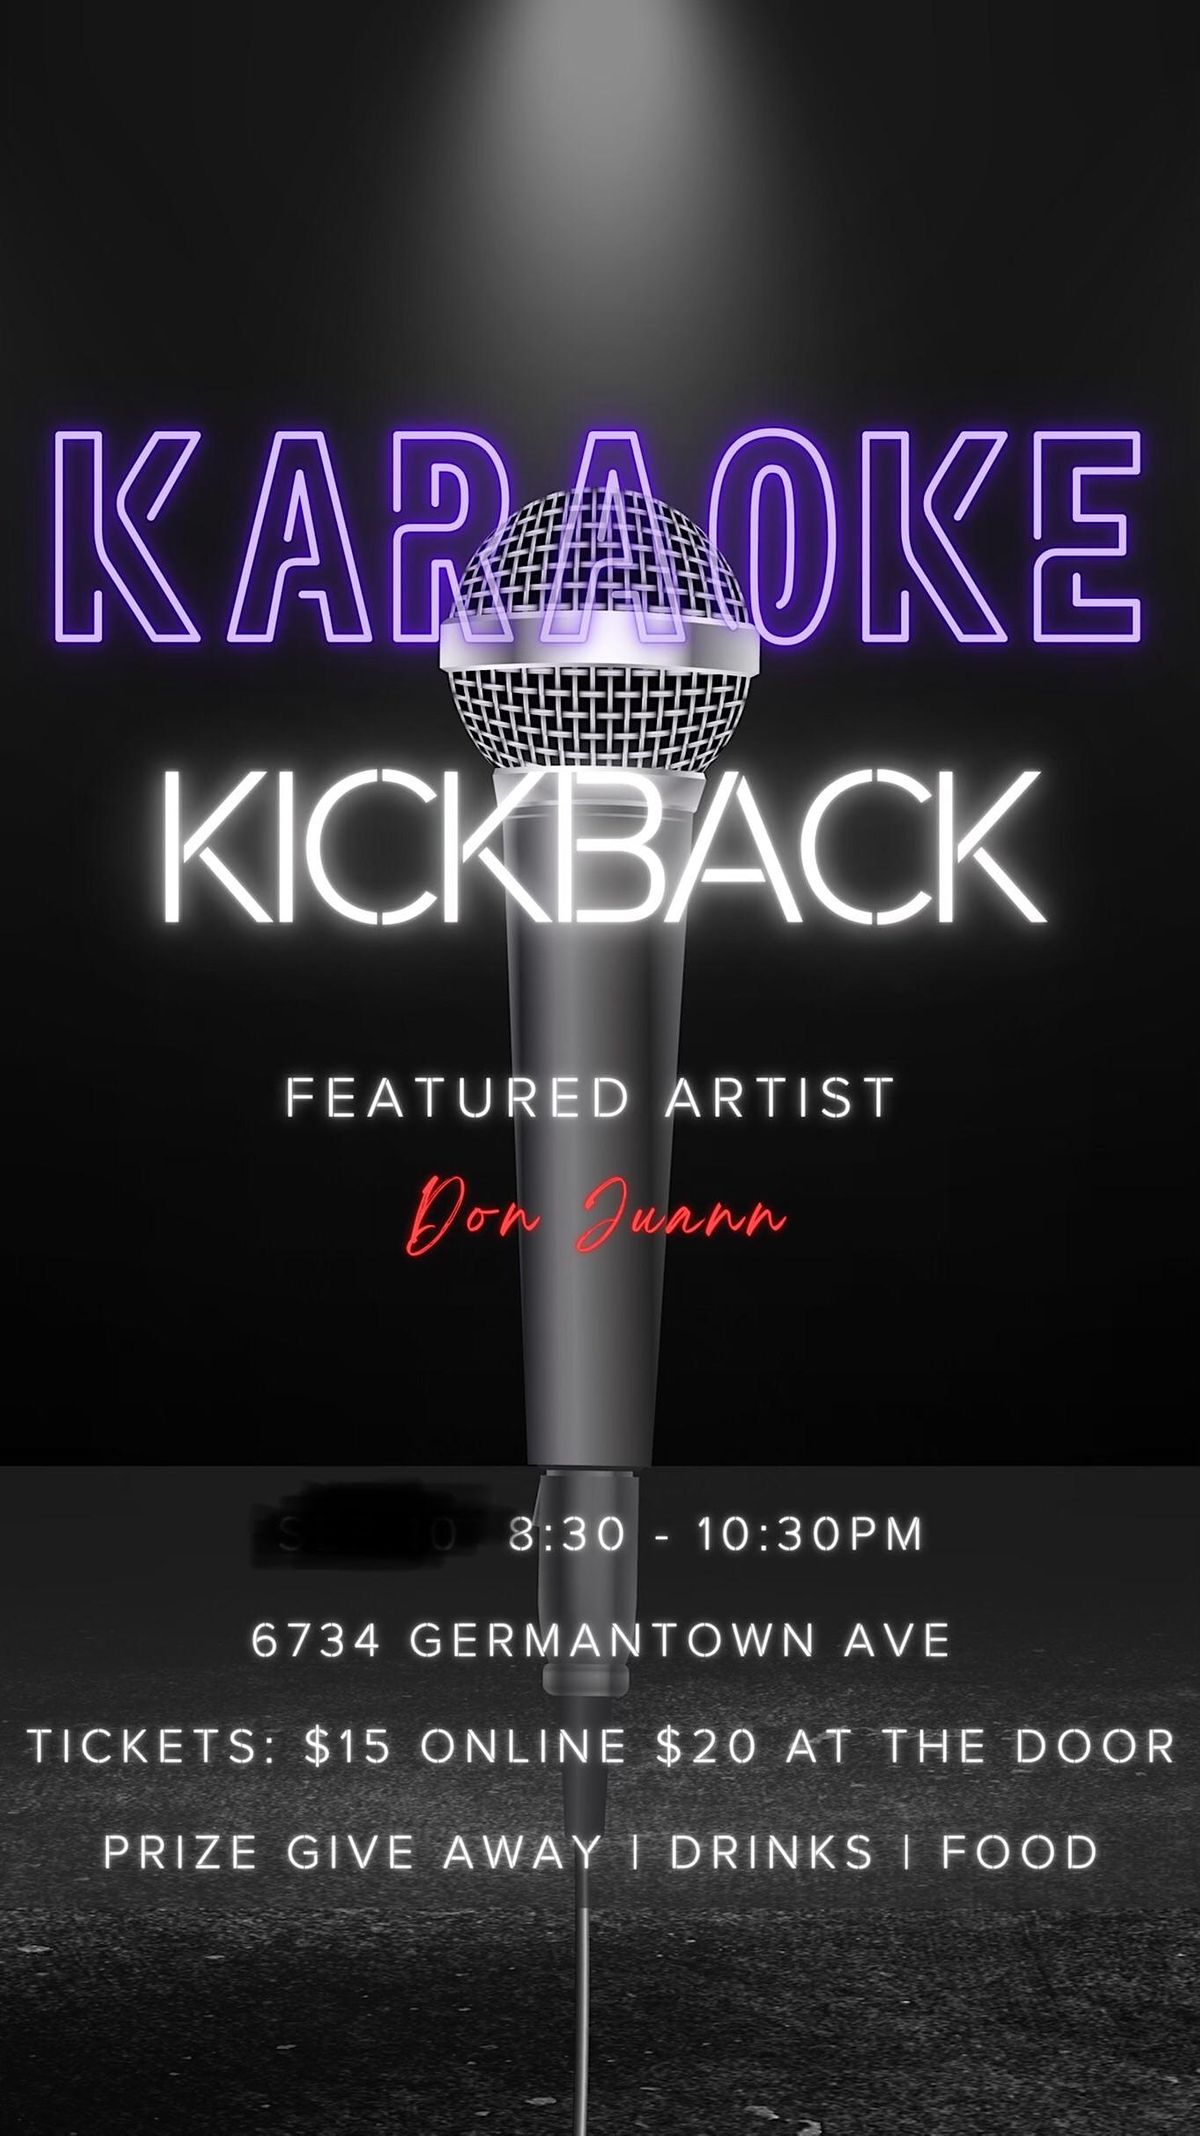 Karaoke Kickback